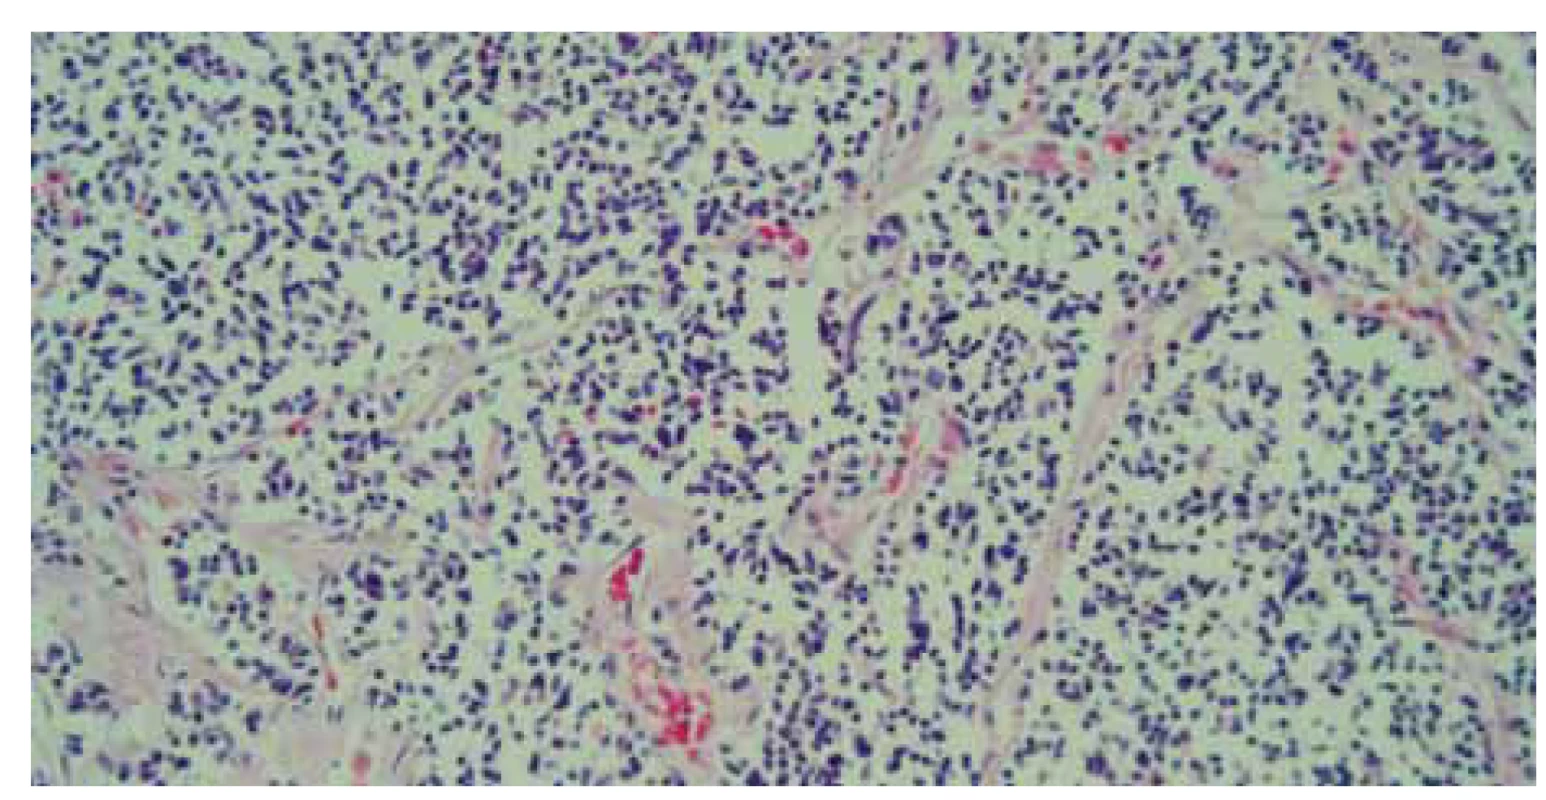 Histológia – parenchým pečene infi ltrovaný malobunkovou nádorovou
proliferáciou, farbenie hematoxylin-eozinom, zväčšenie 40×.<br>
Fig. 7. Histology – liver parenchyma infi ltrated by small cell tumour proliferation,
hematoxylin eosin staining, magnifi cation 40×.